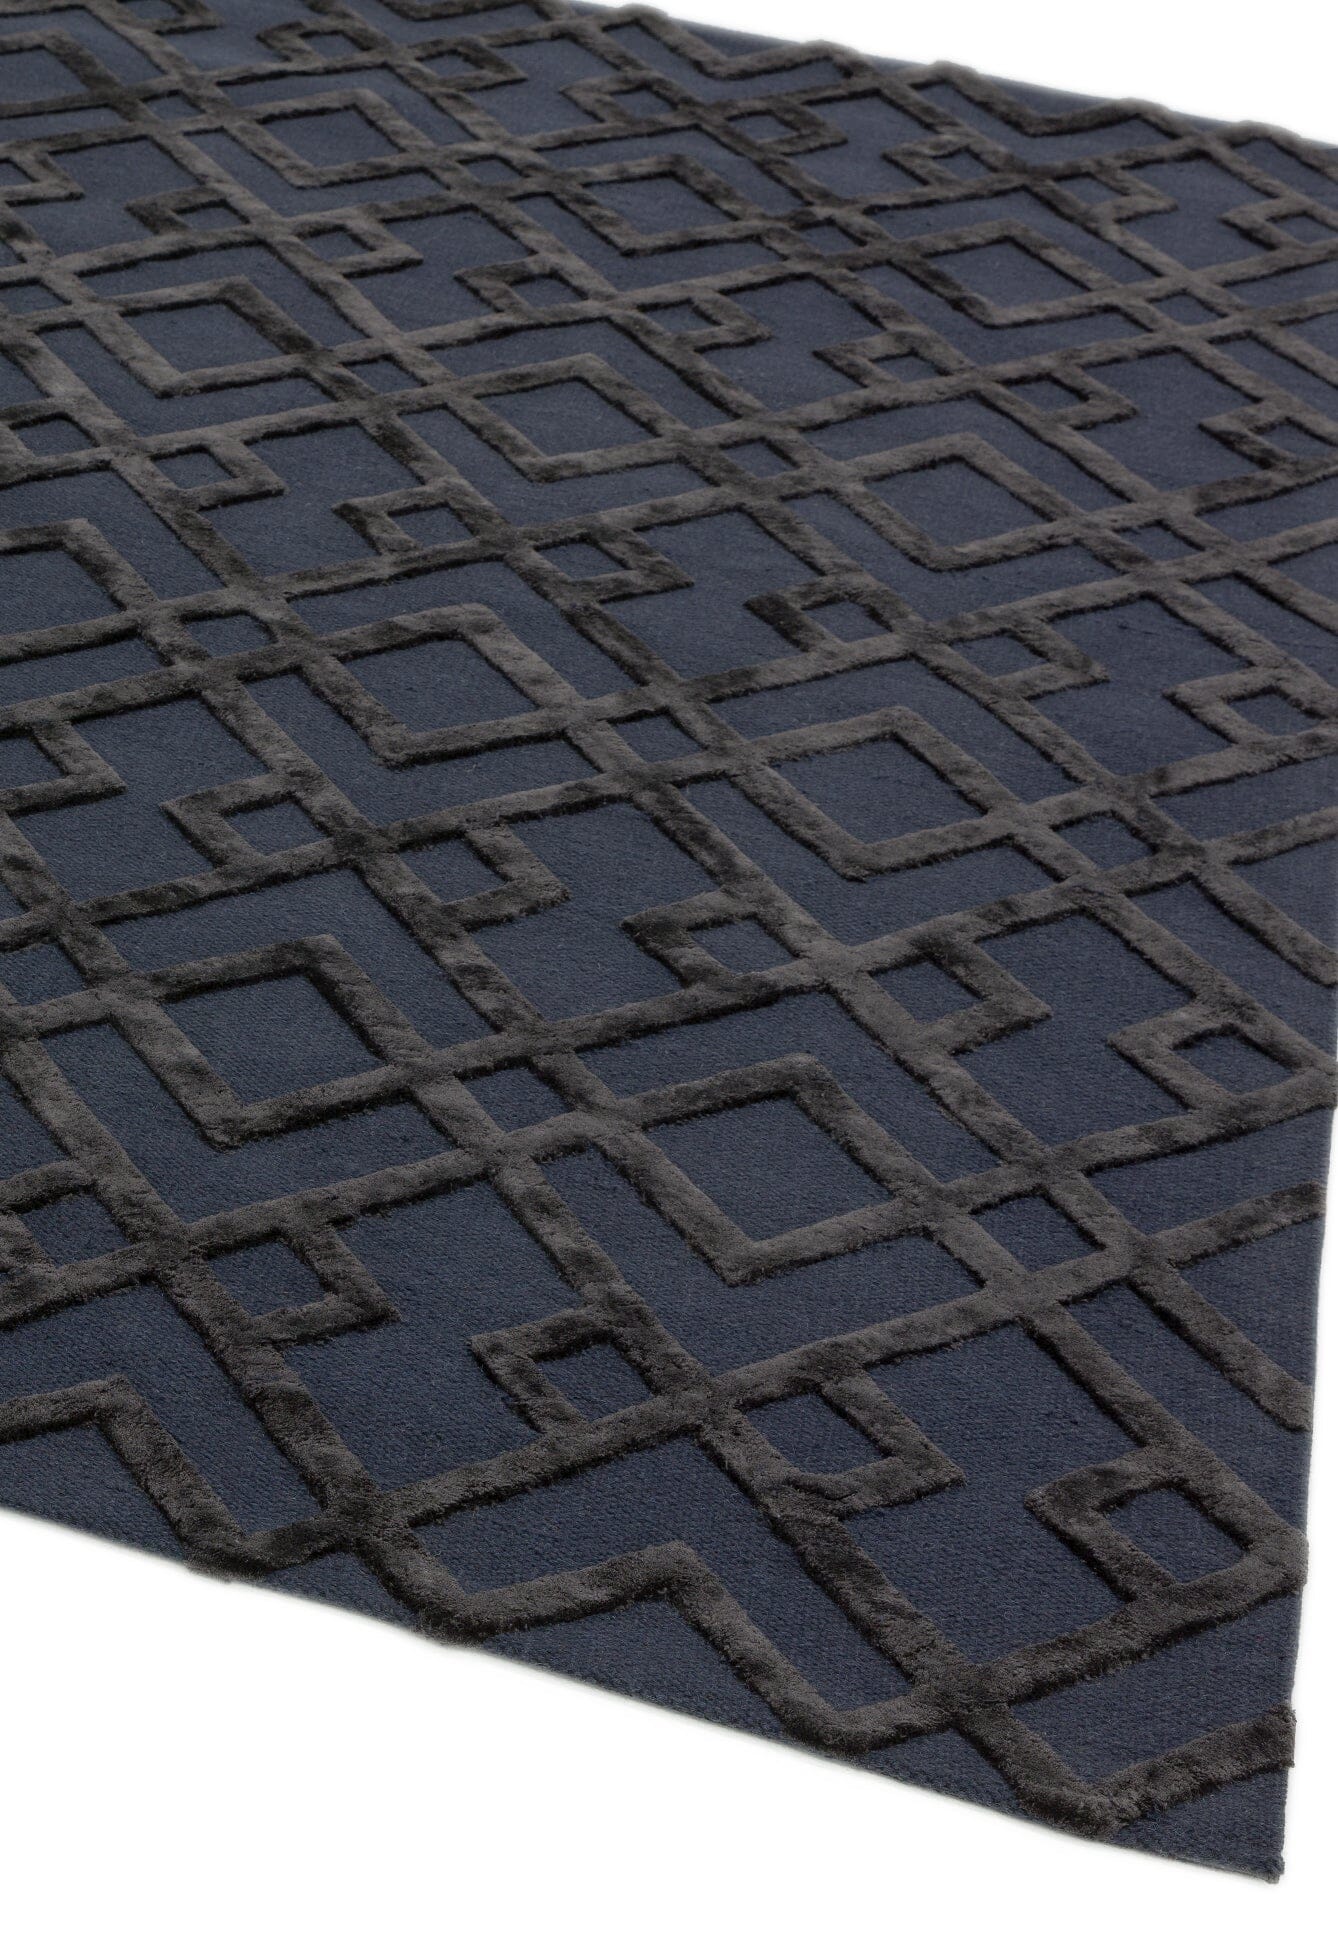 Covor negru din viscoză lână lucrat manual modern model geometric Dixon Black Trellis 4-10 mm 160×230 cm DIXO160230BLAC